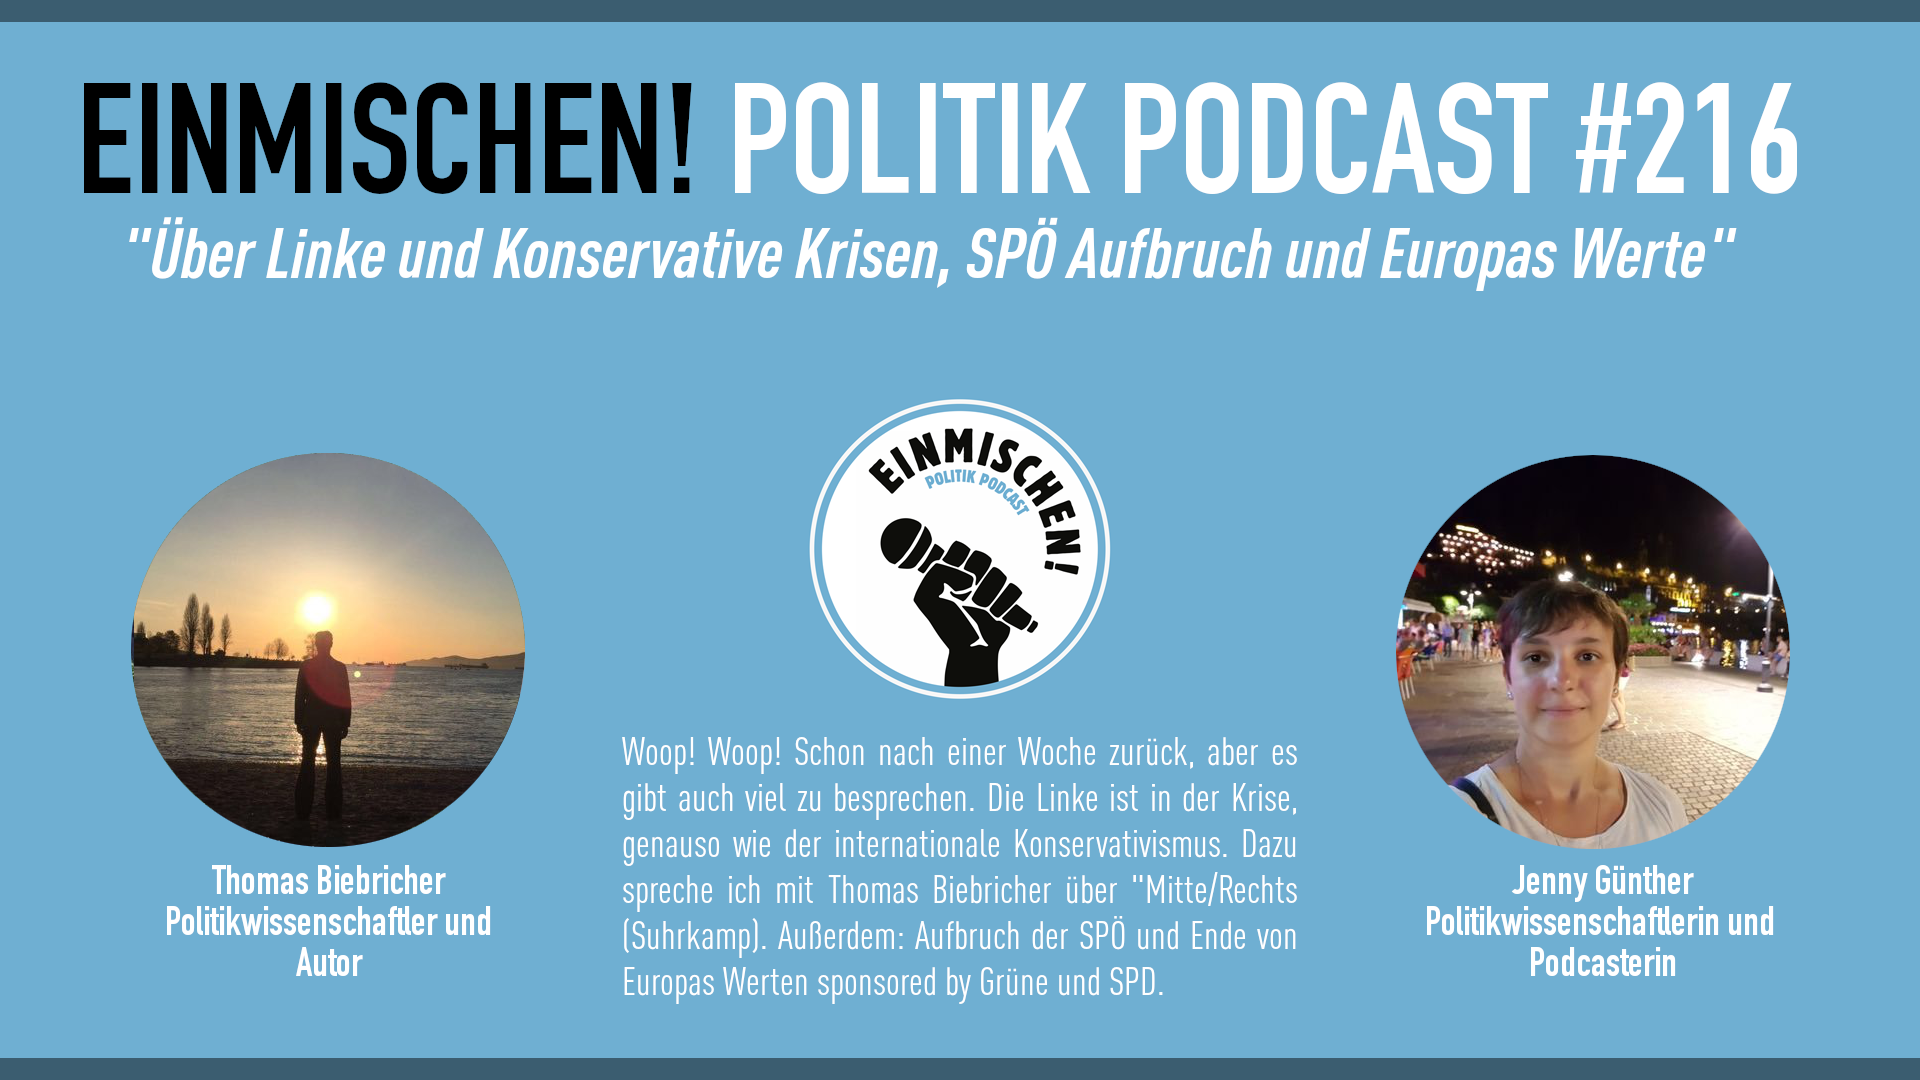 Über Linke und Konservative Krisen, einen SPÖ Aufbruch und Europas Werte